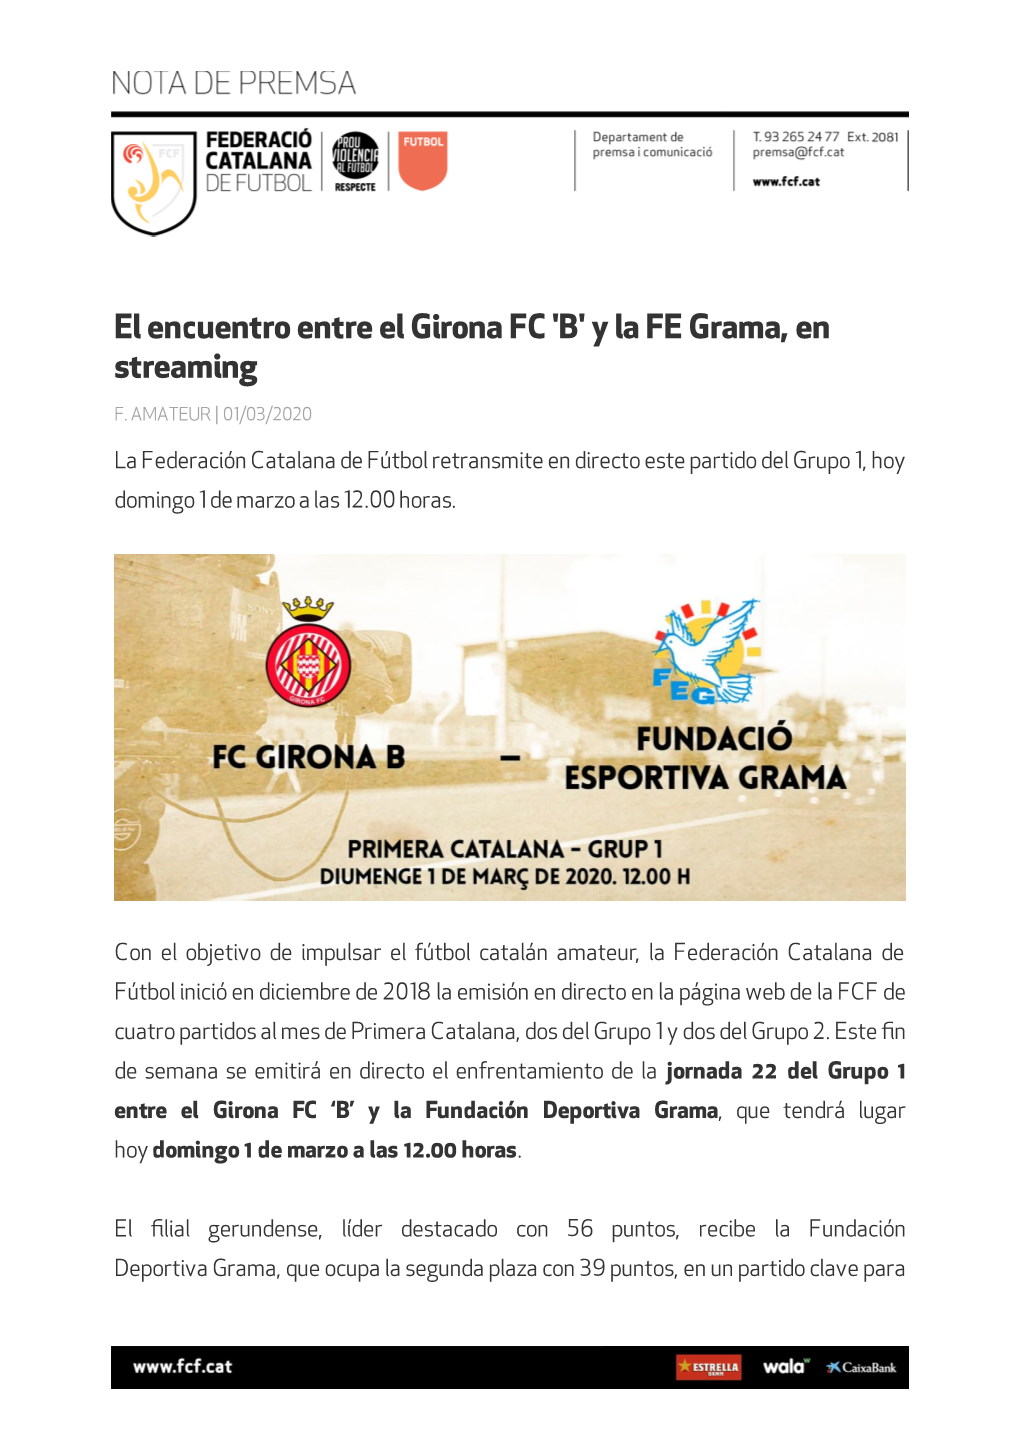 El Encuentro Entre El Girona FC 'B' Y La FE Grama, En Streaming